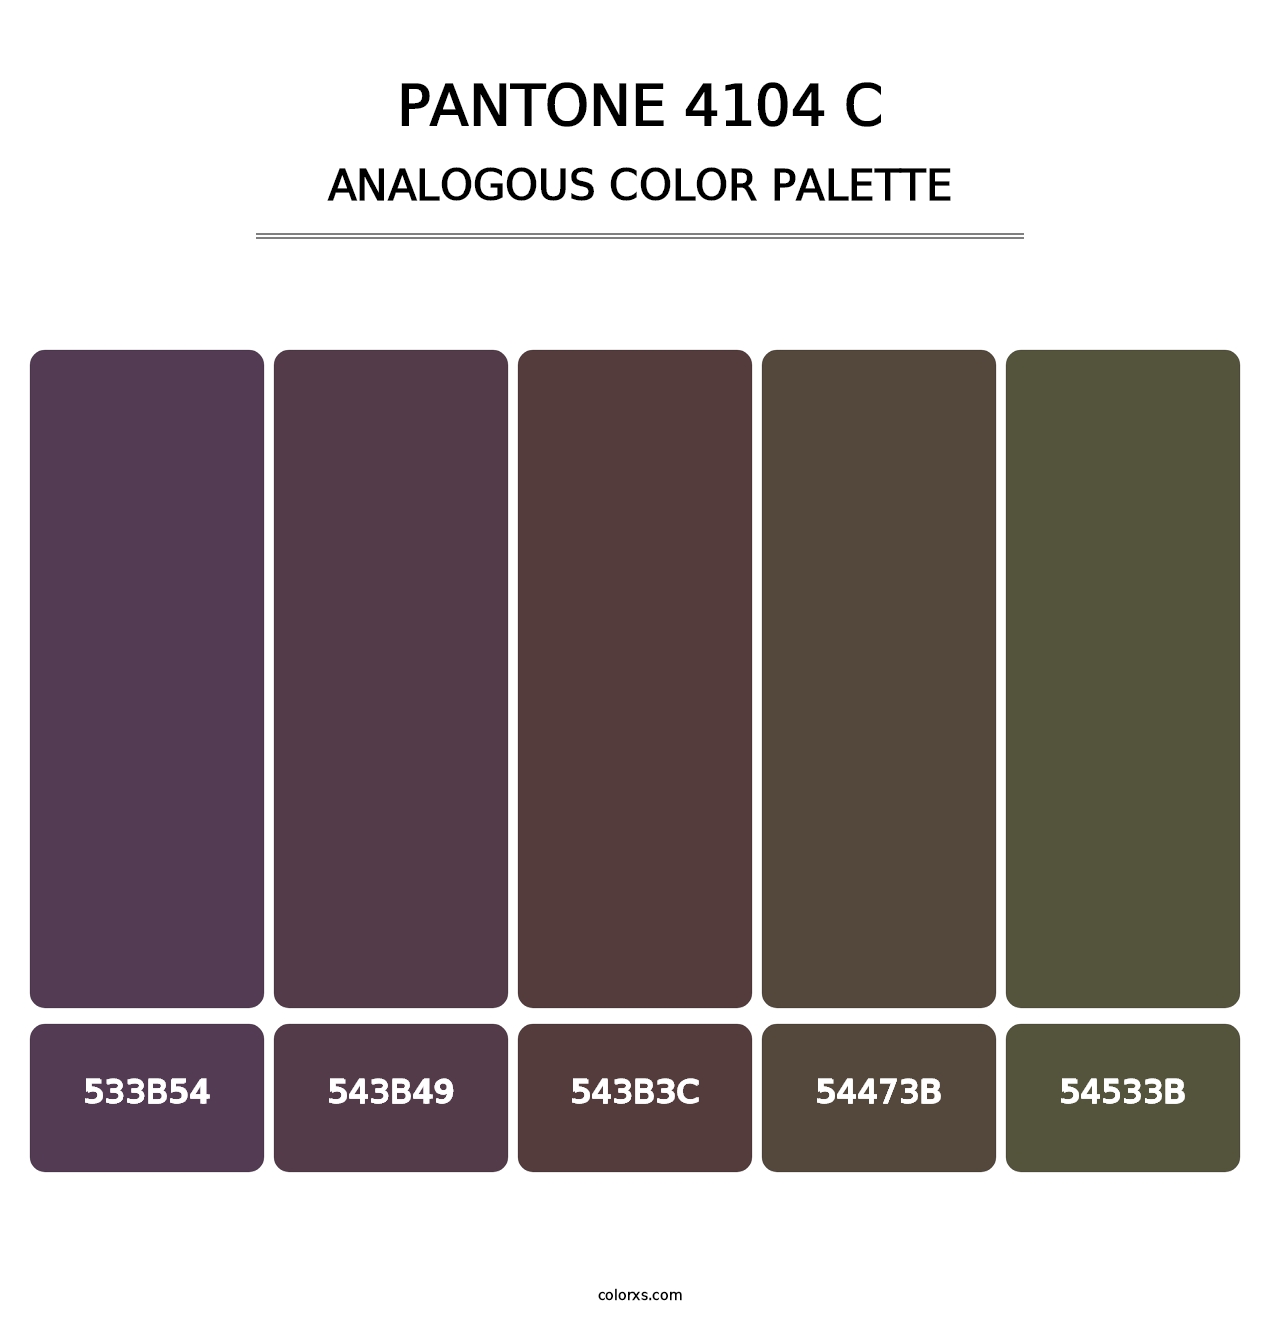 PANTONE 4104 C - Analogous Color Palette